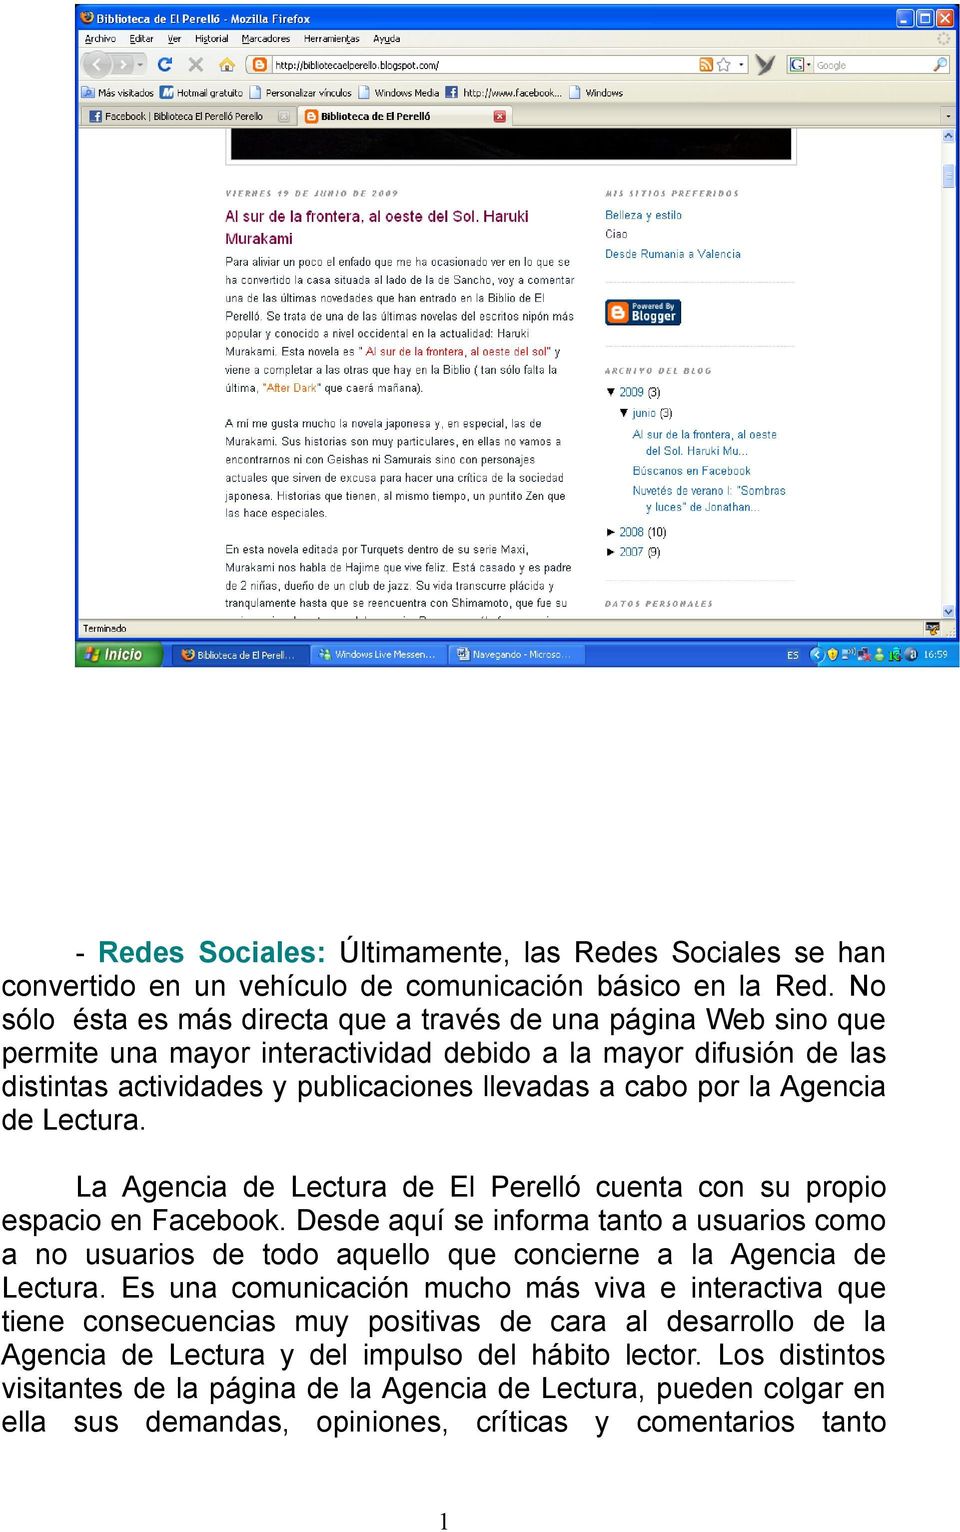 Agencia de Lectura. La Agencia de Lectura de El Perelló cuenta con su propio espacio en Facebook.